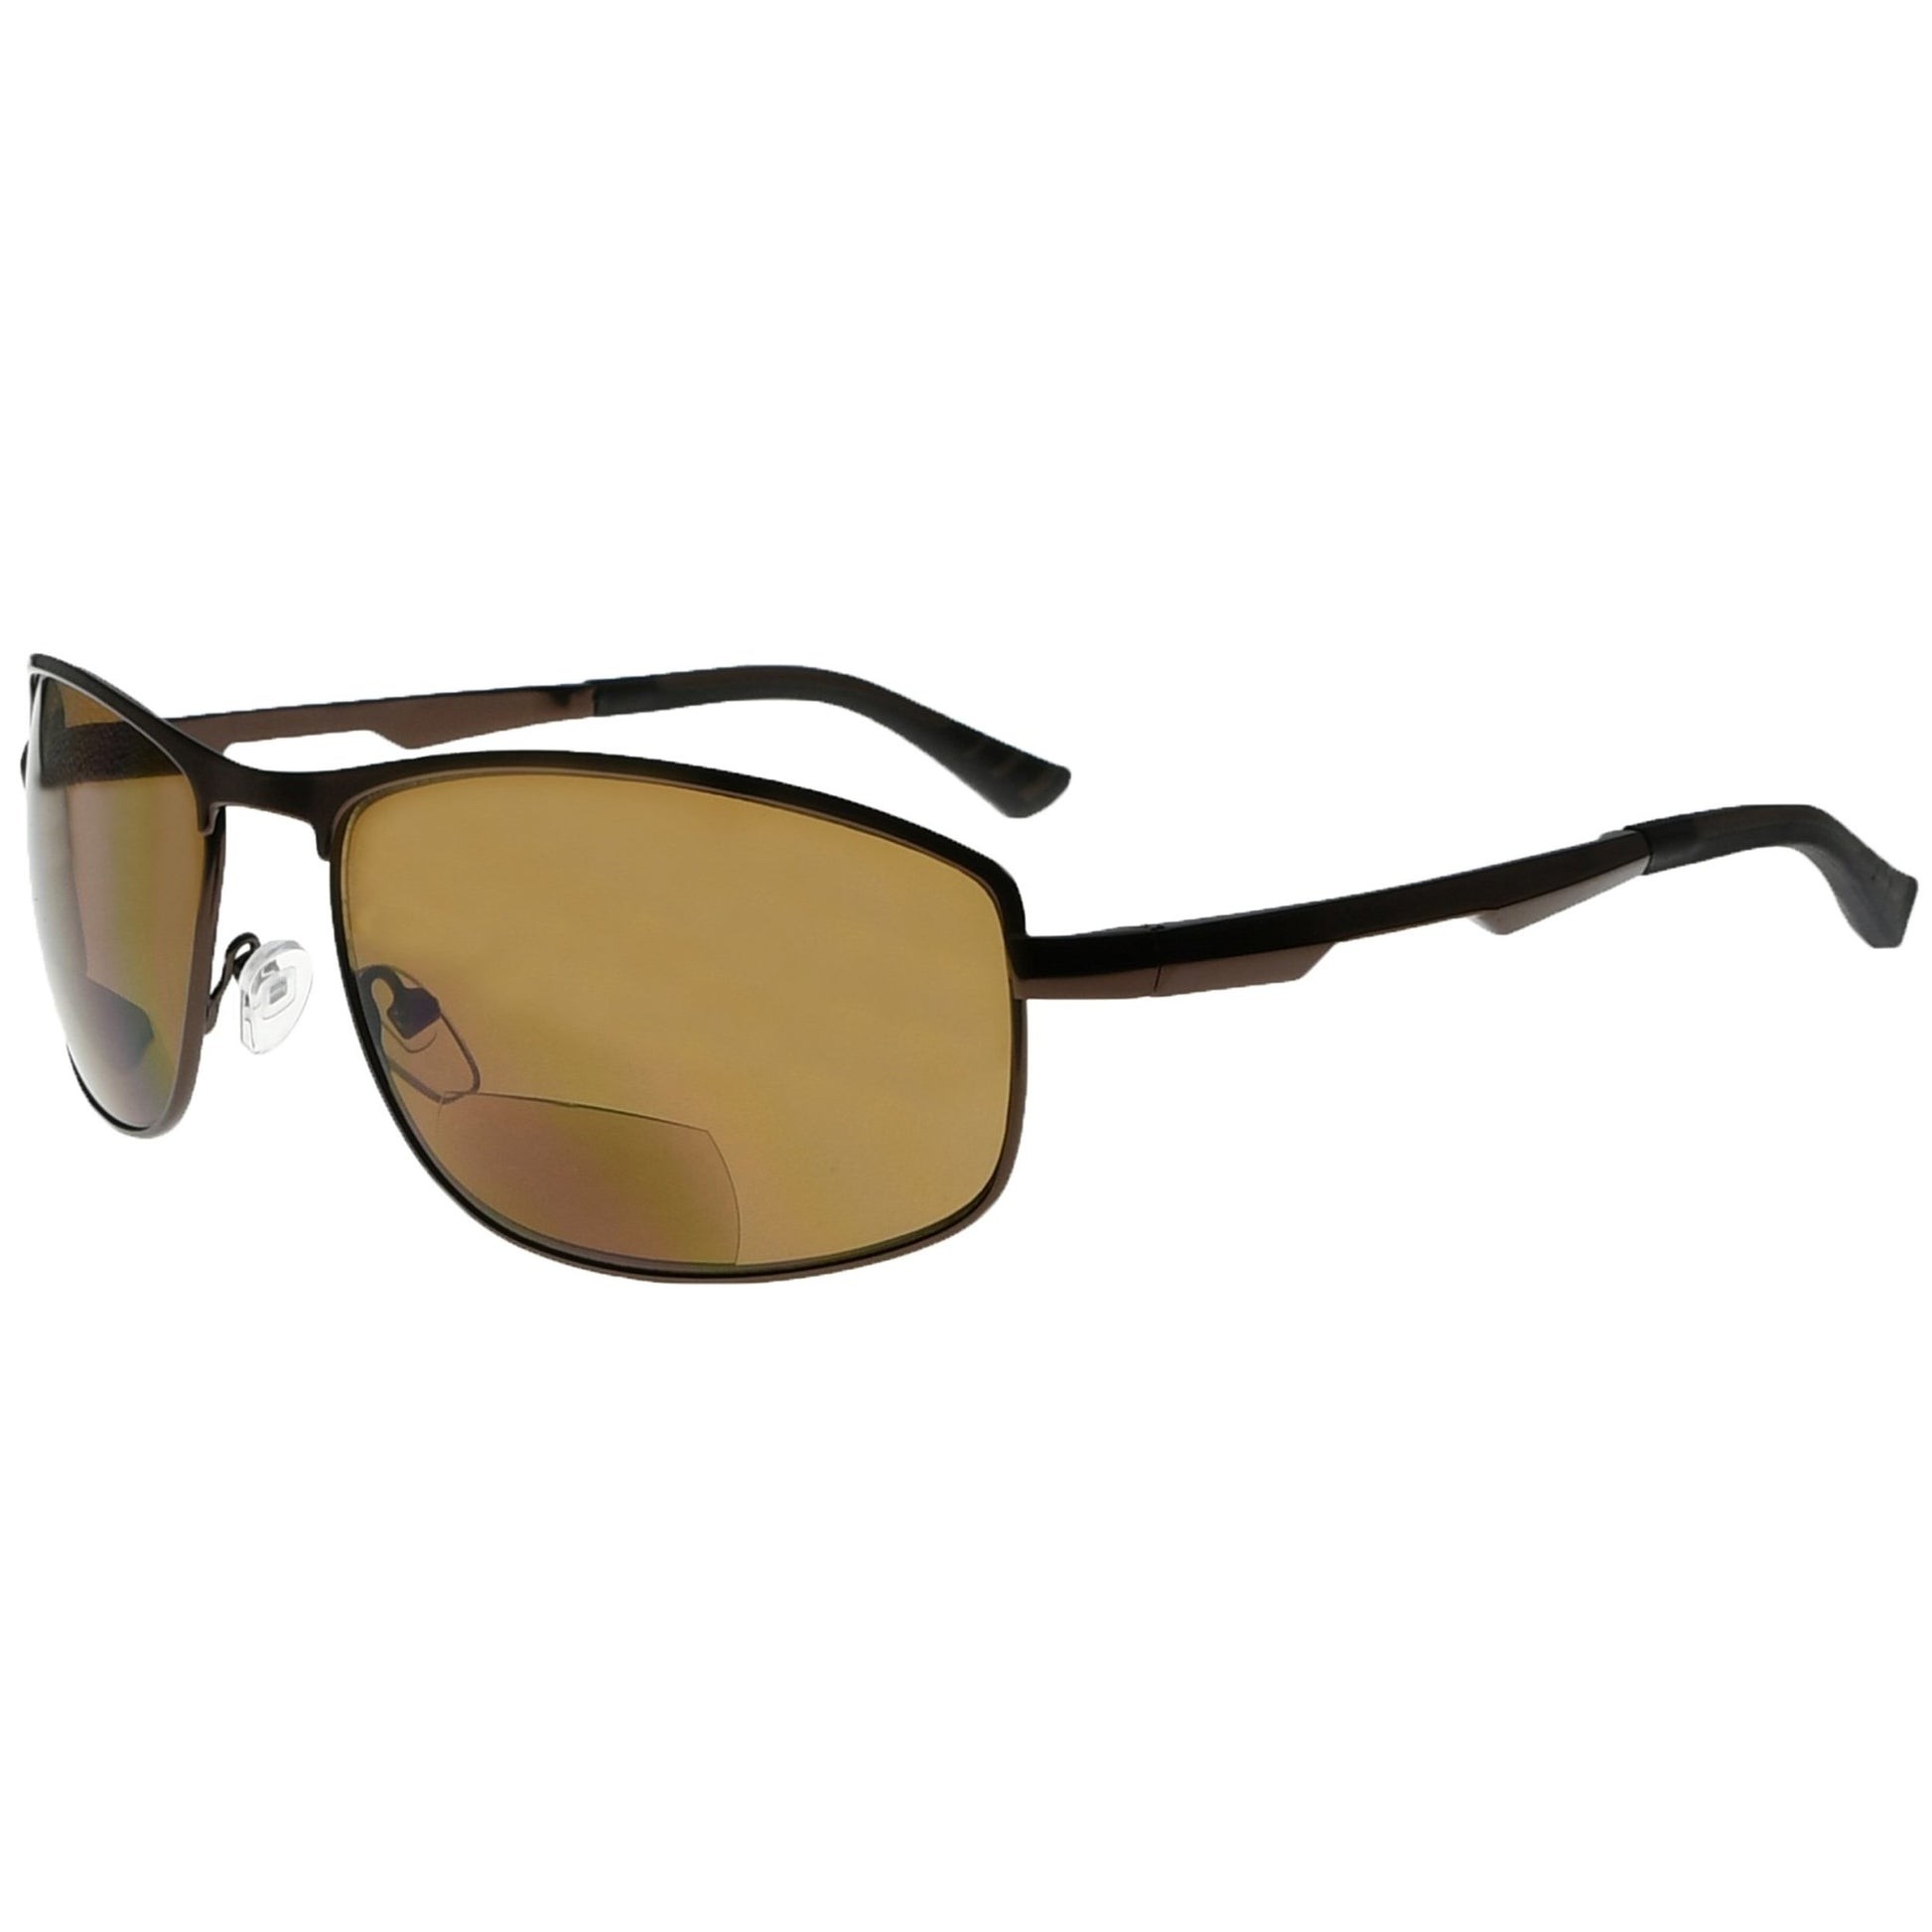 Bifocal Sunglasses Readers Outdoor SG801